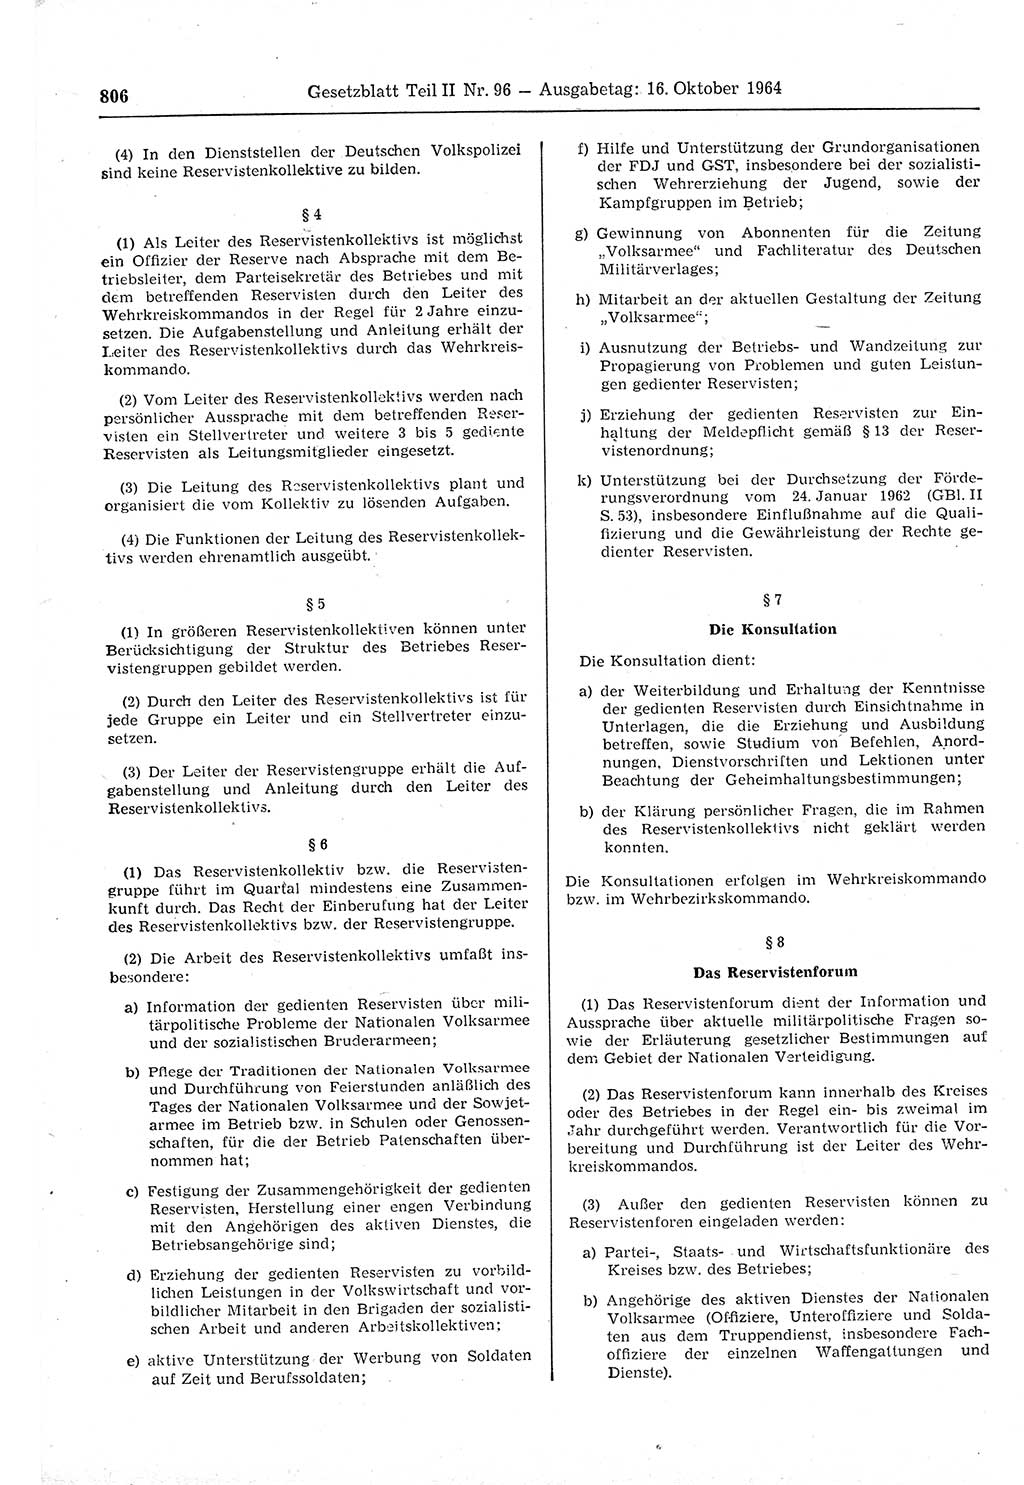 Gesetzblatt (GBl.) der Deutschen Demokratischen Republik (DDR) Teil ⅠⅠ 1964, Seite 806 (GBl. DDR ⅠⅠ 1964, S. 806)